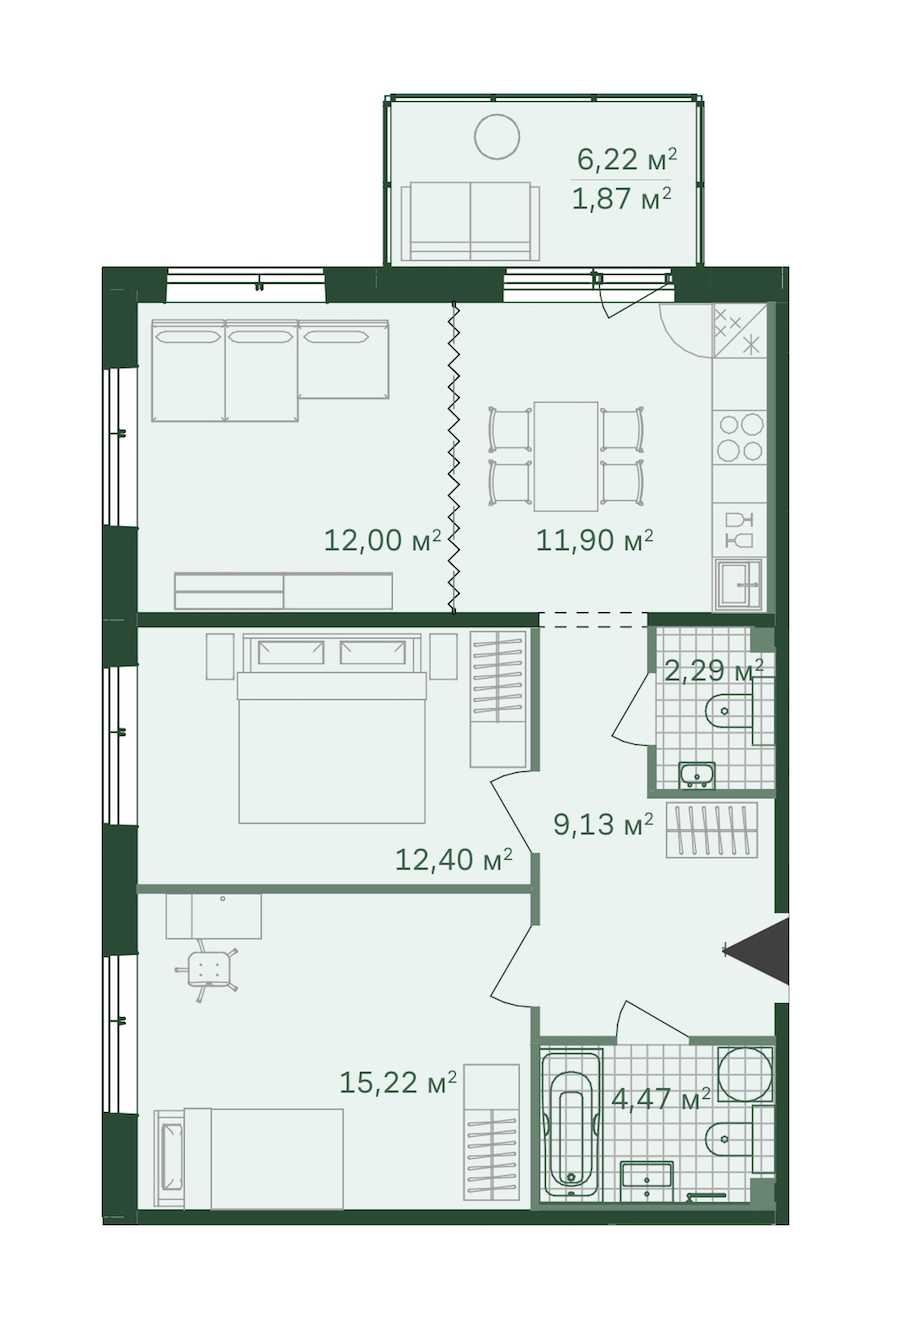 Трехкомнатная квартира в : площадь 69.28 м2 , этаж: 1 – купить в Санкт-Петербурге